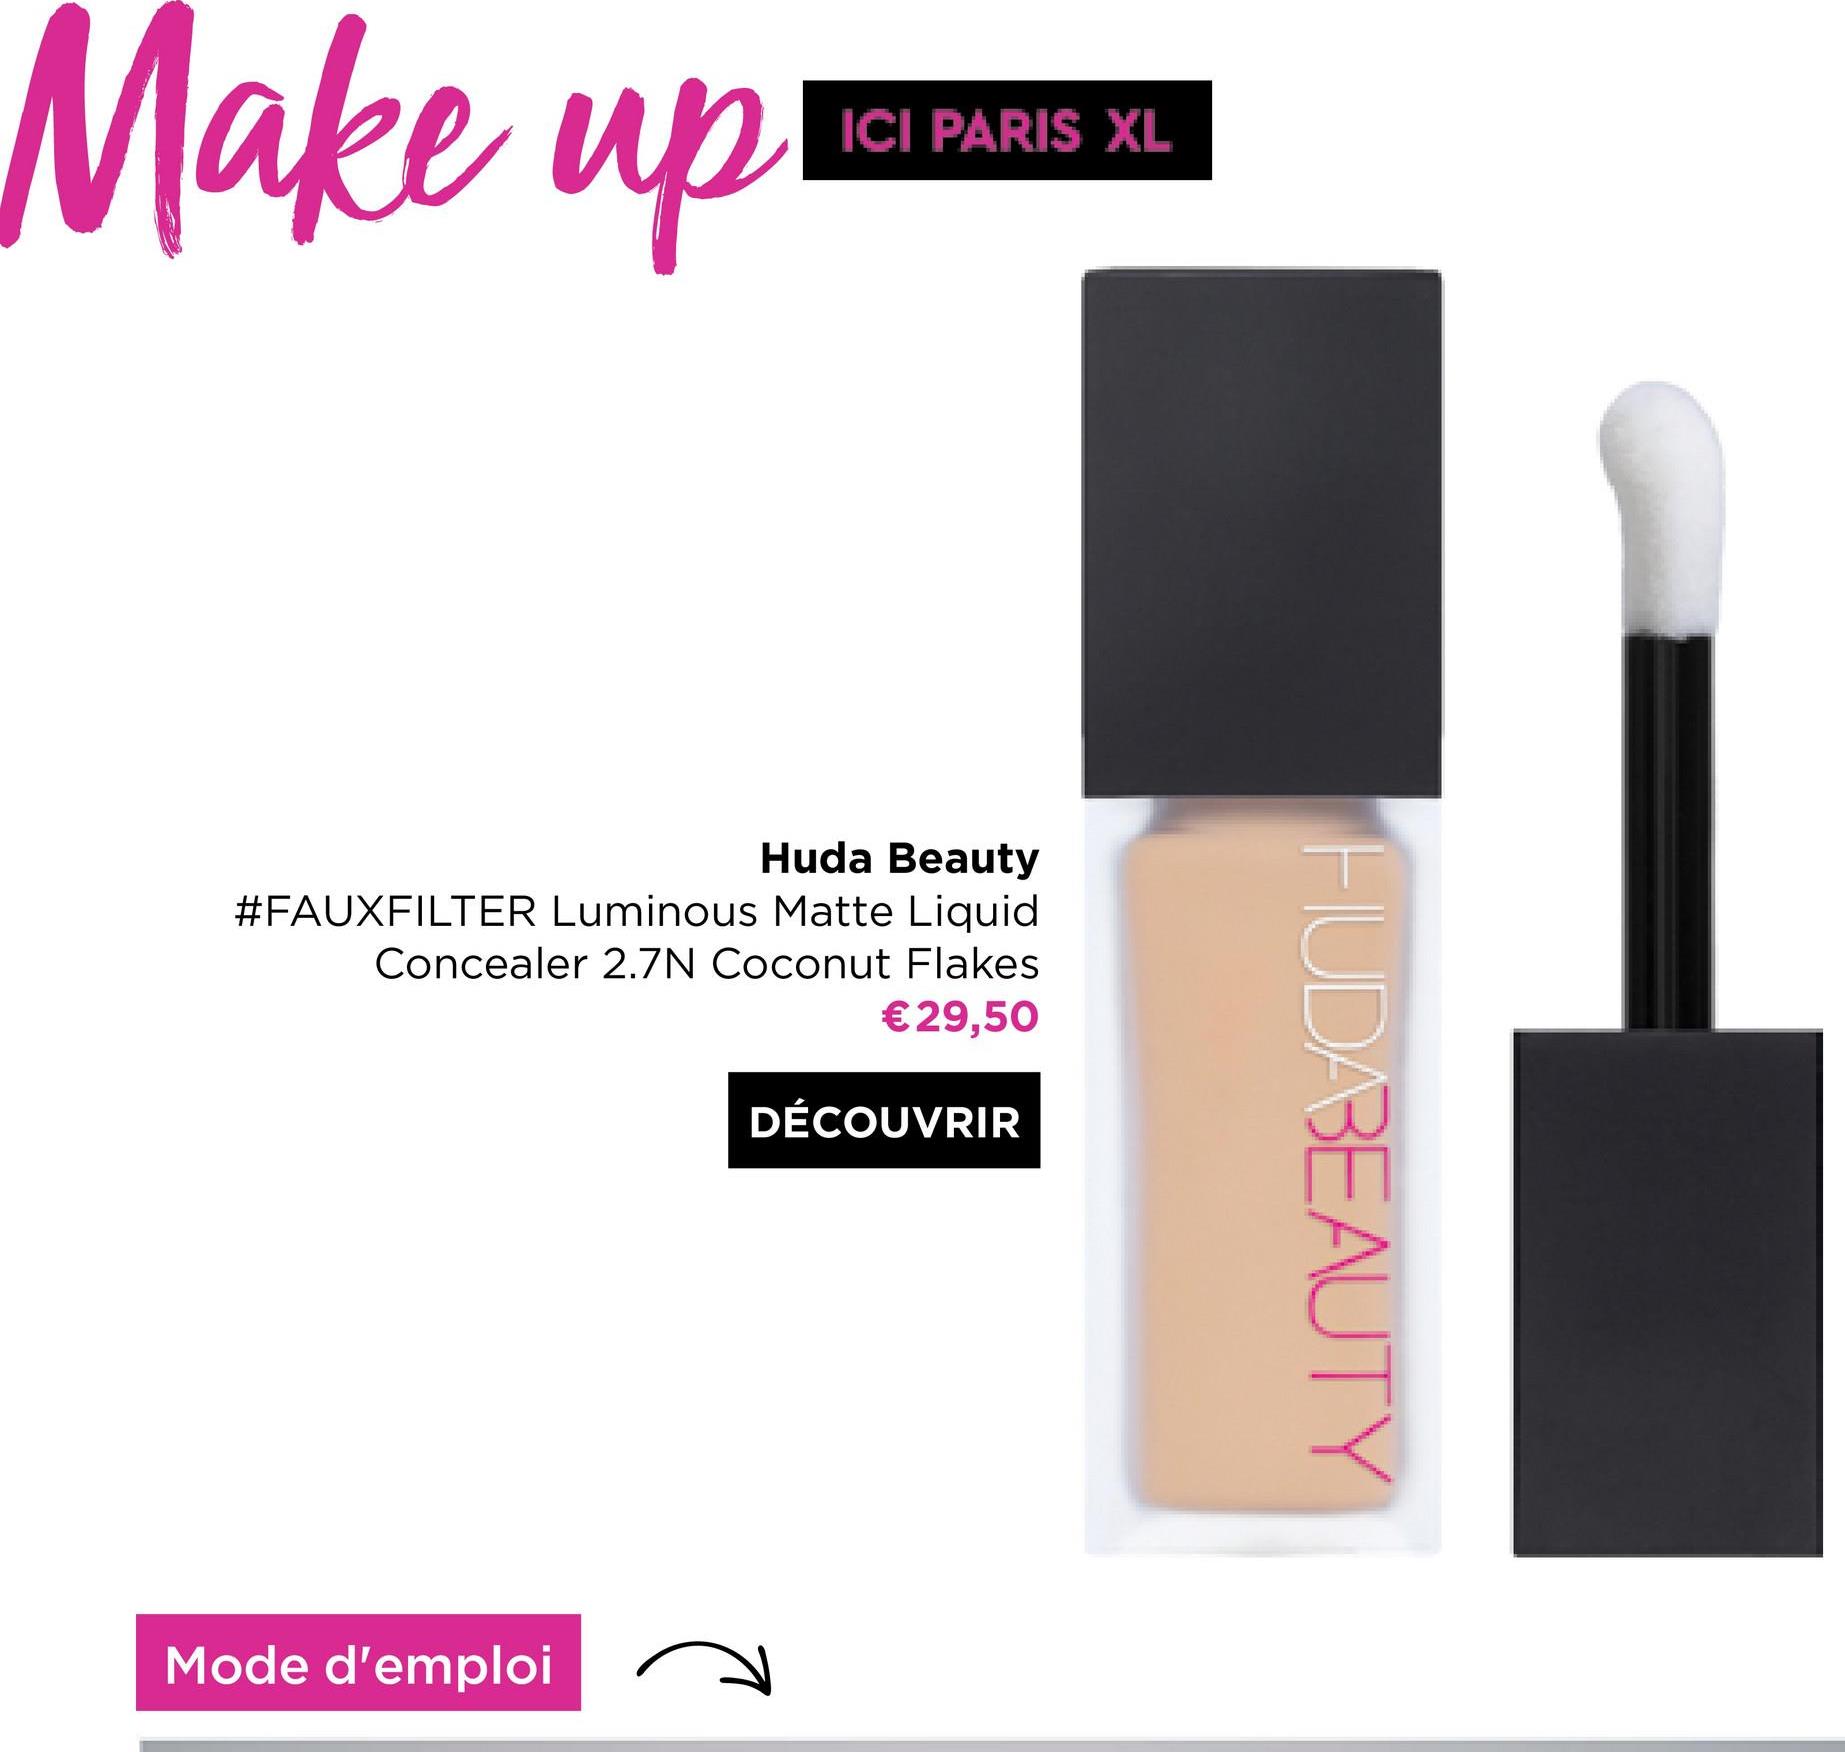 Make up!
ICI PARIS XL
Huda Beauty
#FAUXFILTER Luminous Matte Liquid
Concealer 2.7N Coconut Flakes
€29,50
DÉCOUVRIR
Mode d'emploi
HUDABEAUTY